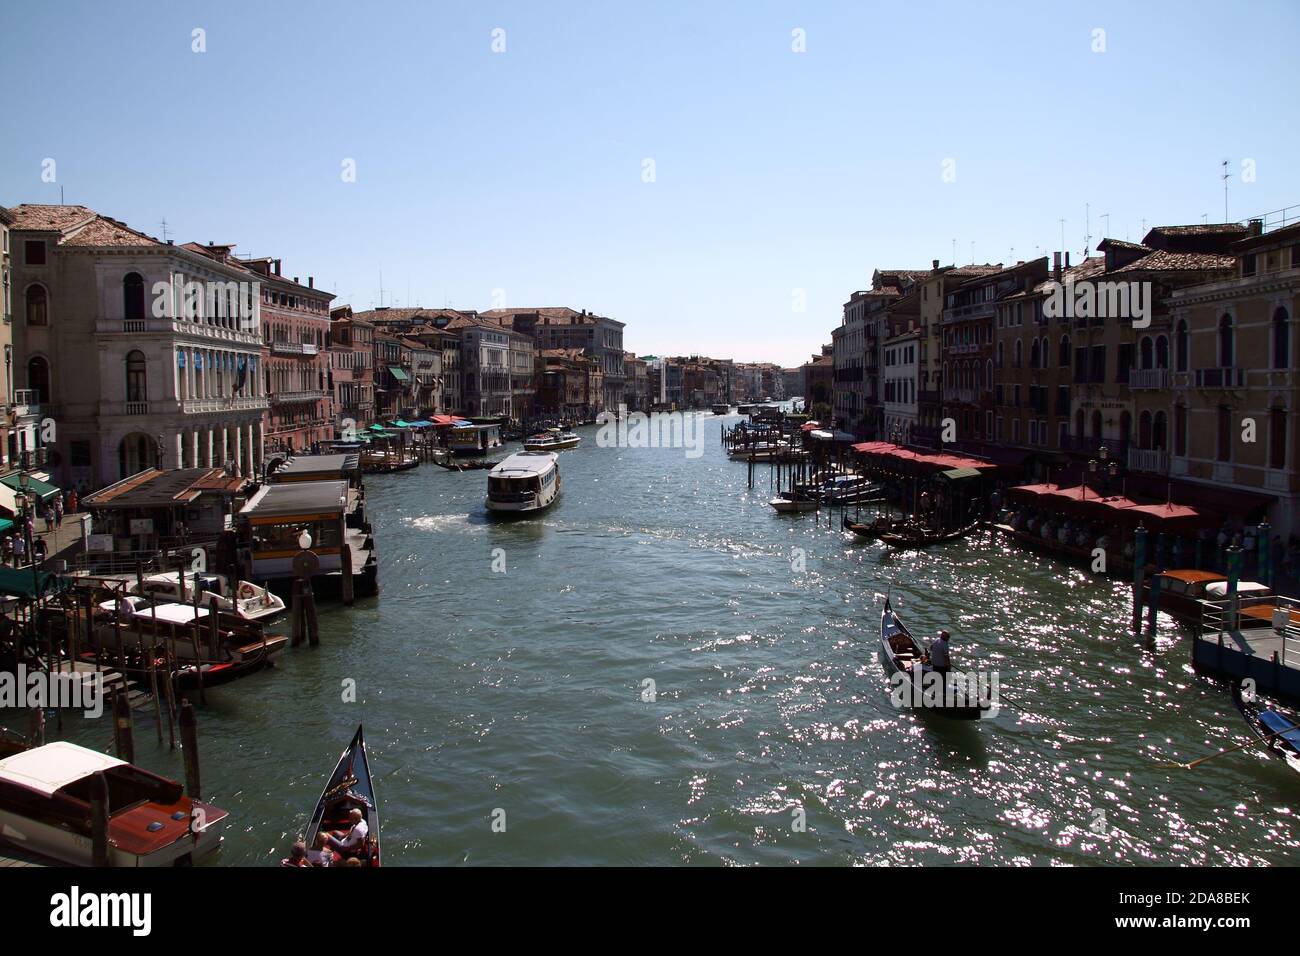 Canale Grande in Venice Stock Photo